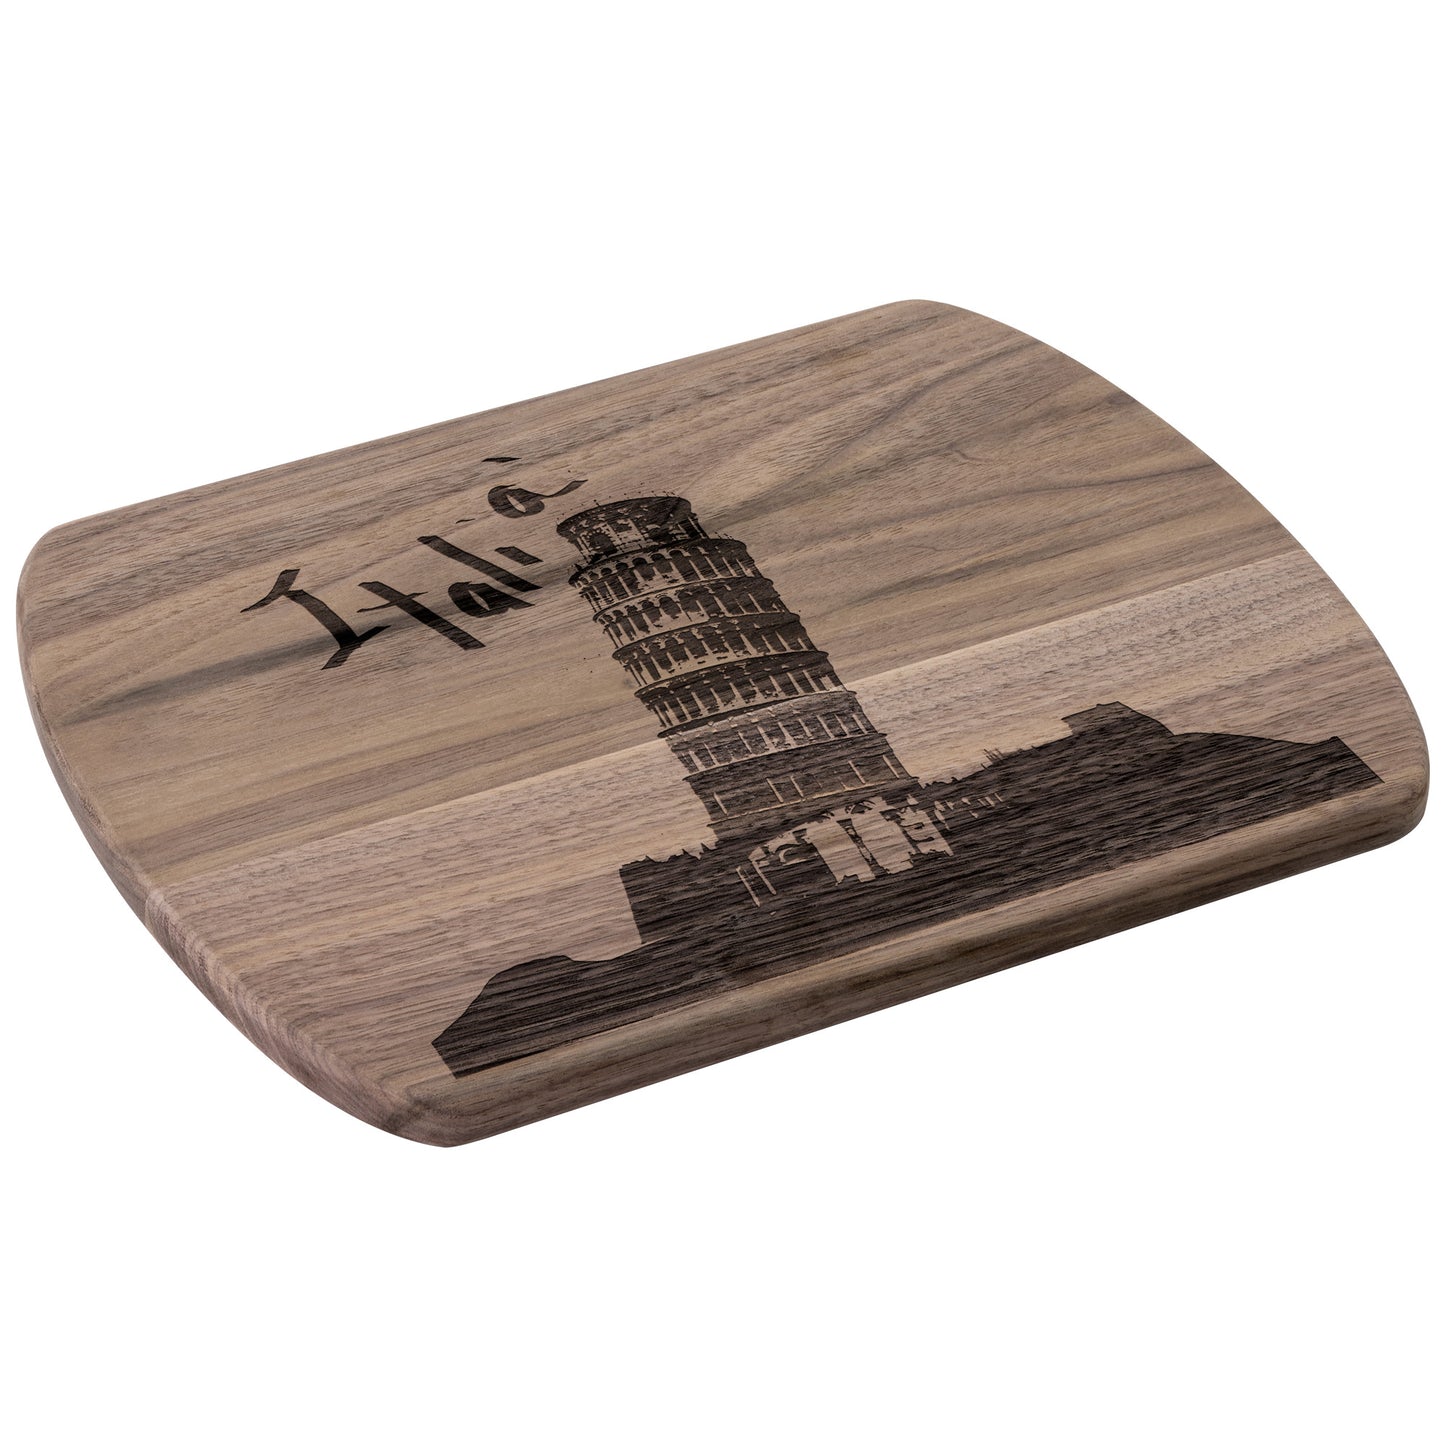 Pisa Italia Oval Hardwood Cutting Board